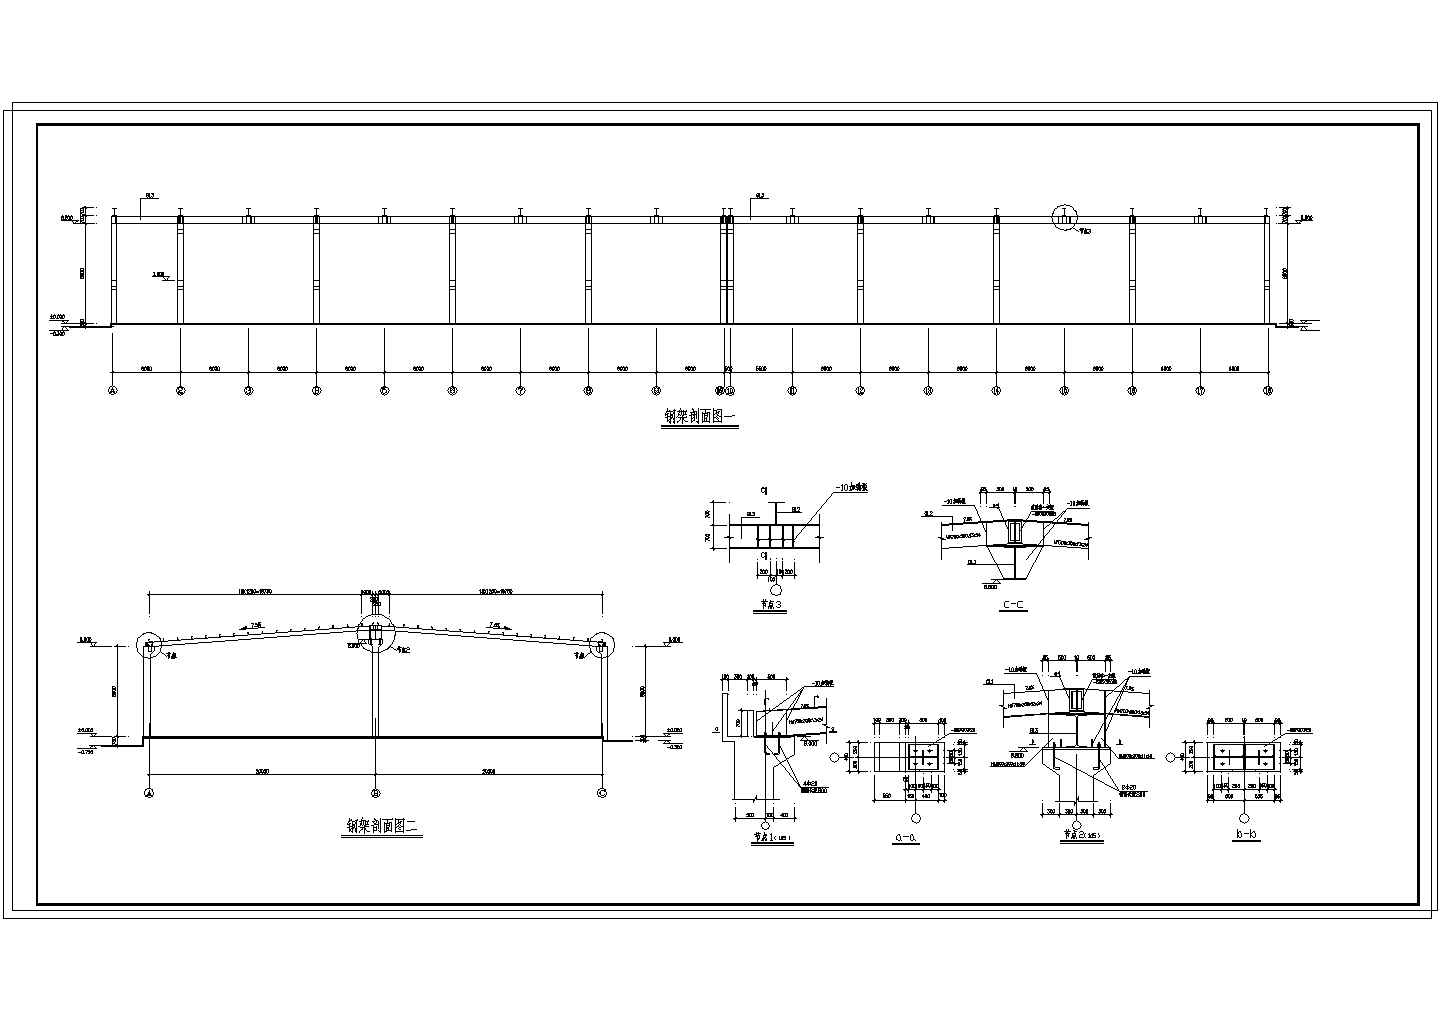 钢梁砼柱大跨度单层厂房 节点详细